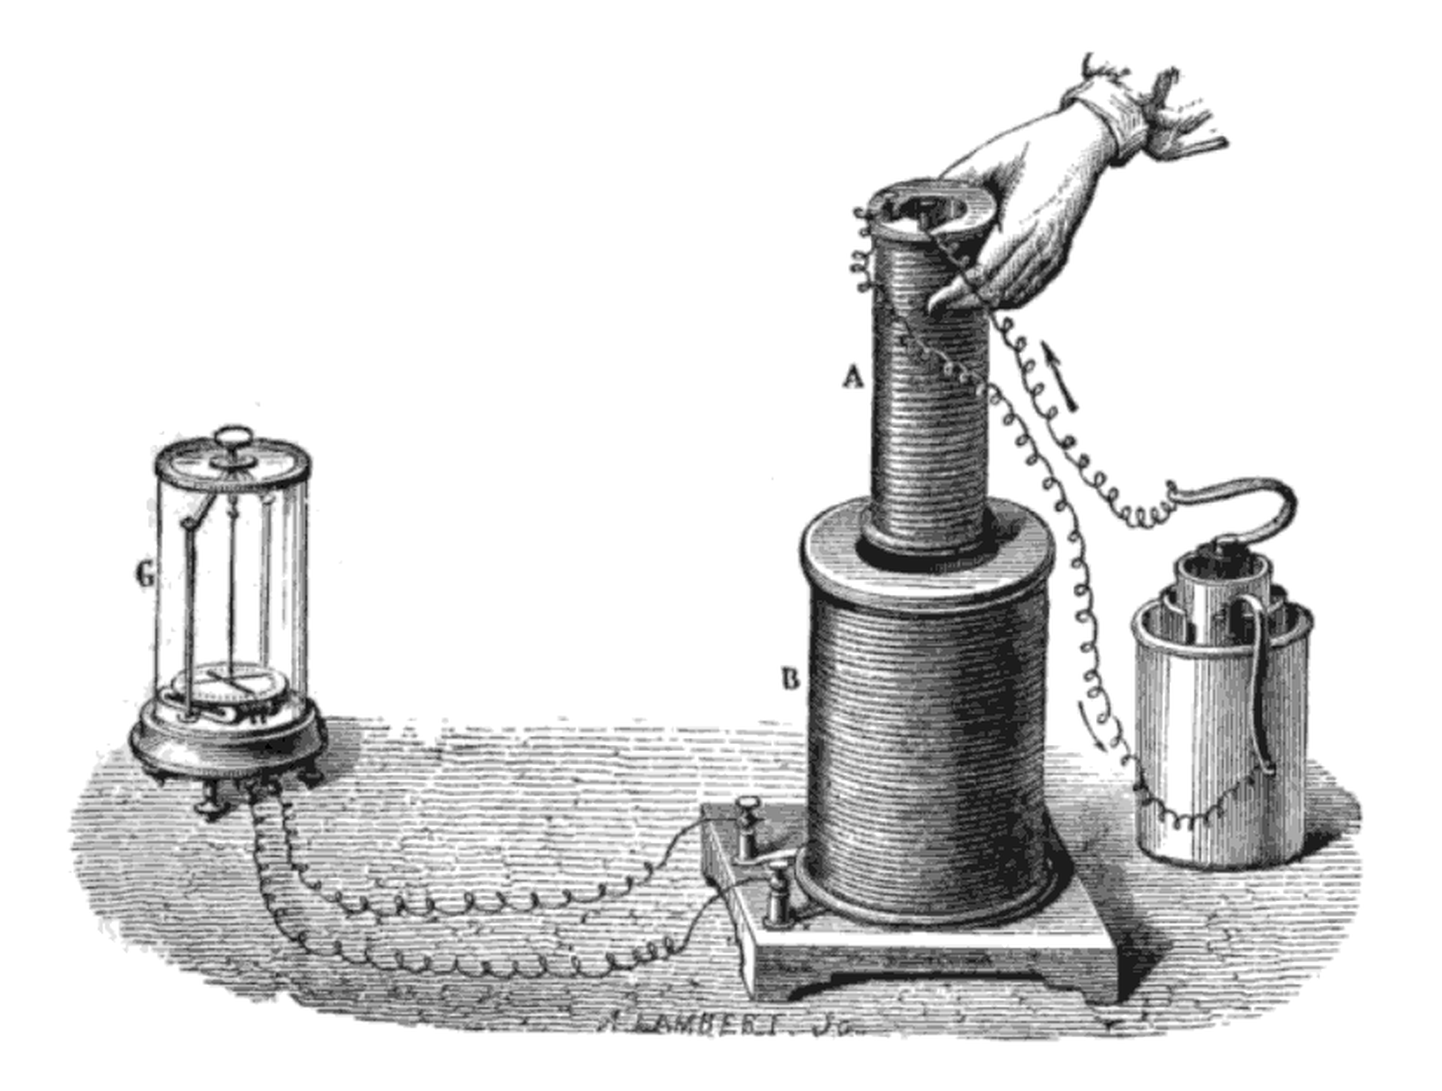 Elektromagnetilise induktsiooni katse, mille Faraday (pildil) 1831. aastal läbi viis: paremal on vooluallikas, mis tekitab mähises A magnetvälja. Kui see mähis sukeldada mähisesse B, tekib mähise väljundis pinge, mida registreerib galvanomeeter C. Võib
arvata, et selle tulemusena muutus maailm rohkemgi kui pärast tule ja ratta kasutusele võtmist.